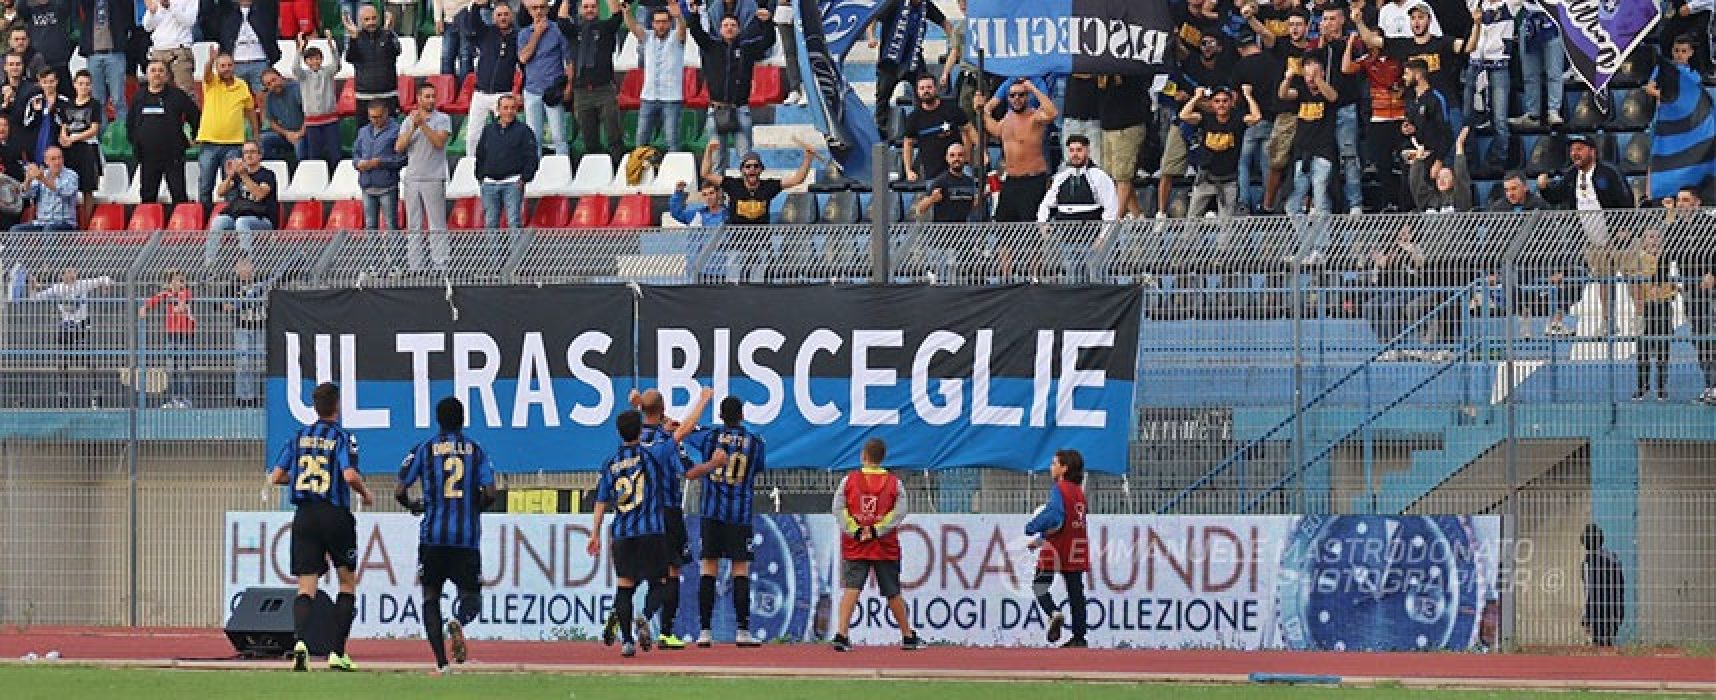 Ebagua-gol, il Bisceglie strappa un punto al Catania